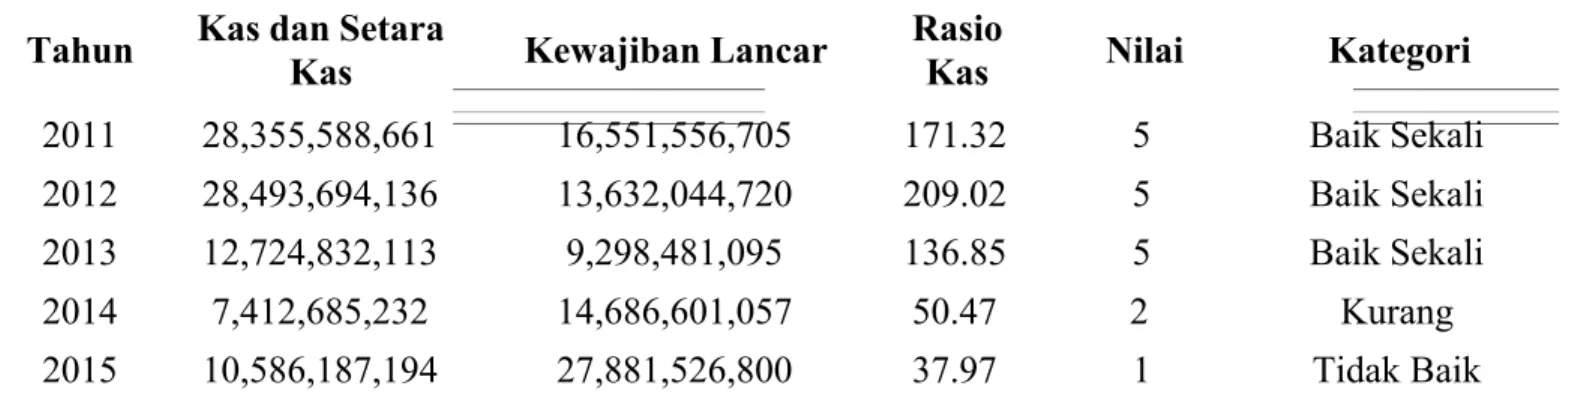 Tabel 3.6 Rasio Kas PDAM Kota Malang Tahun 2011-2015